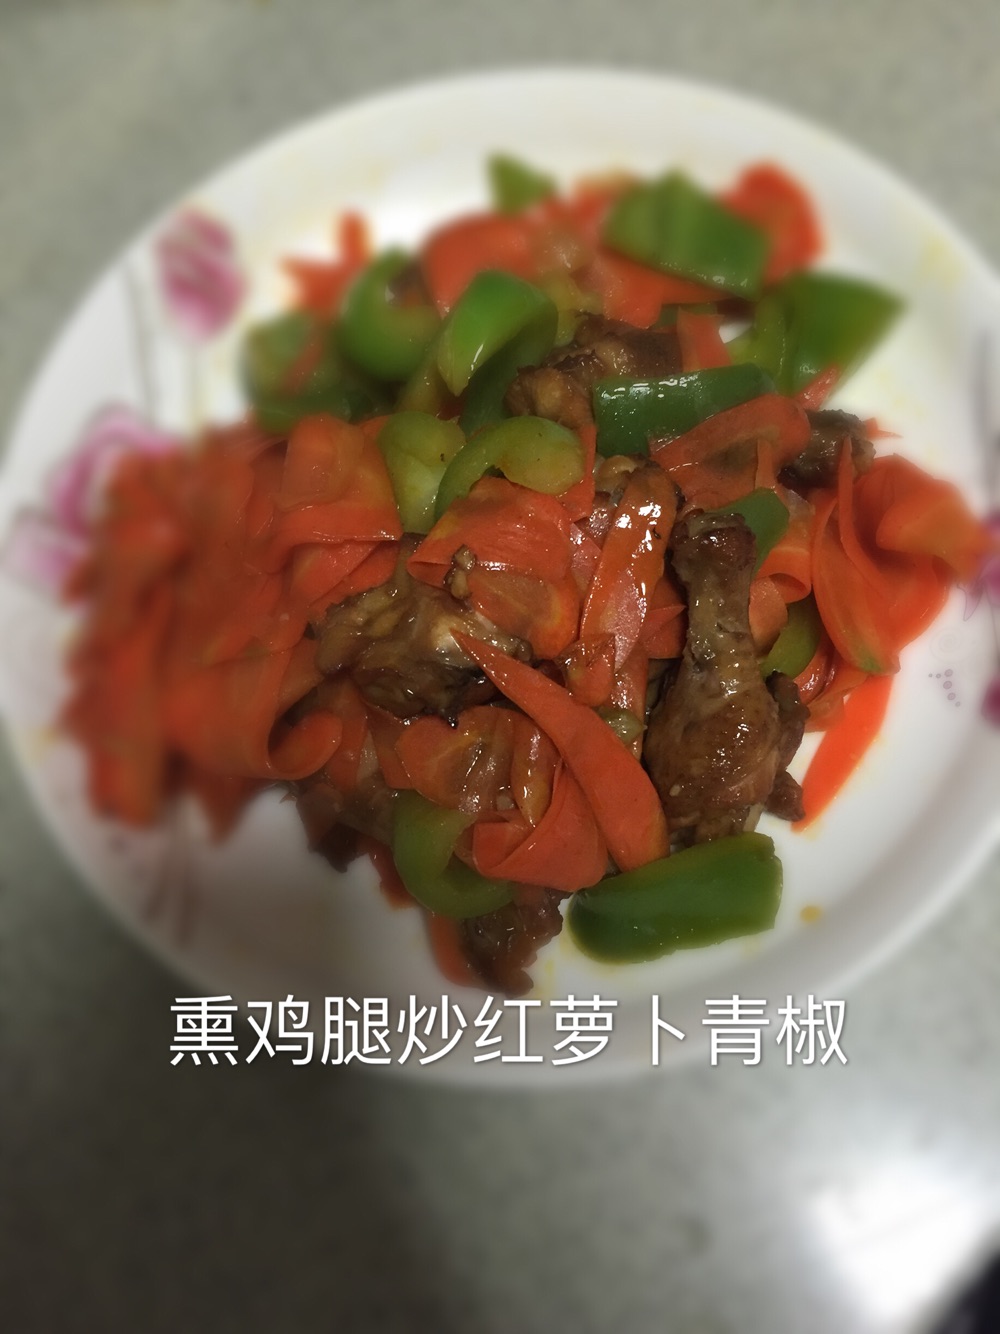 熏鸡腿炒红萝卜青椒